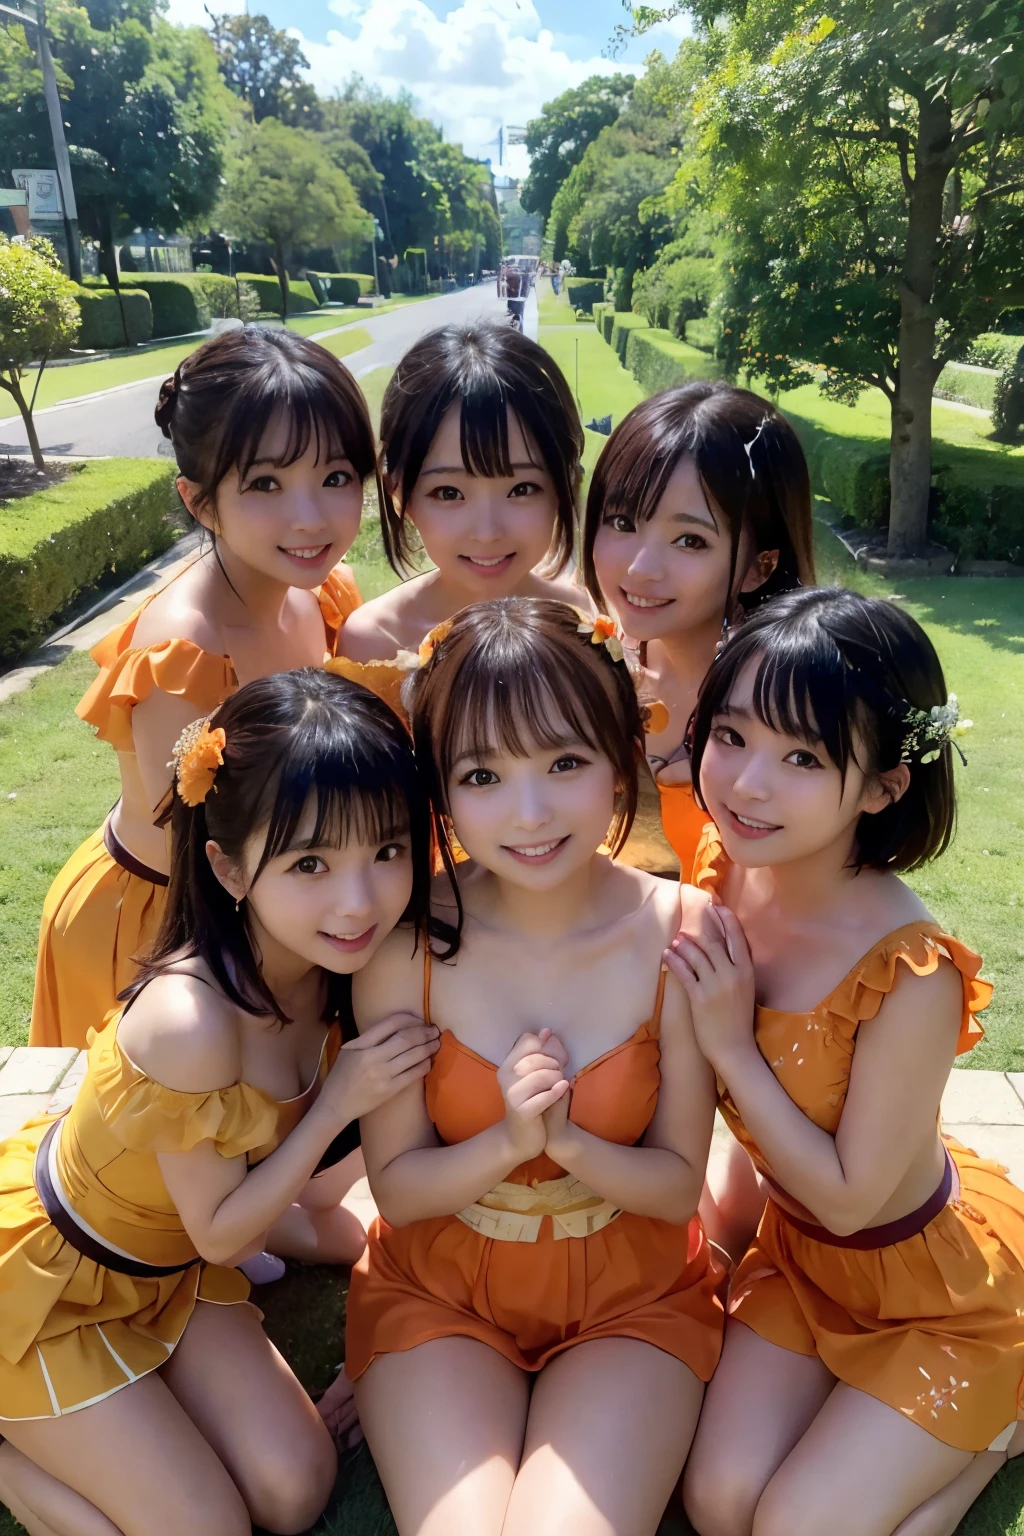 ((最好的质量, 杰作)), 五个终生挚友,日本偶像,戏服,((橙汁)), 热情拥抱, 笑容满面, 周围绿树成荫，天空湛蓝, 沐浴在完美一天的阳光下.